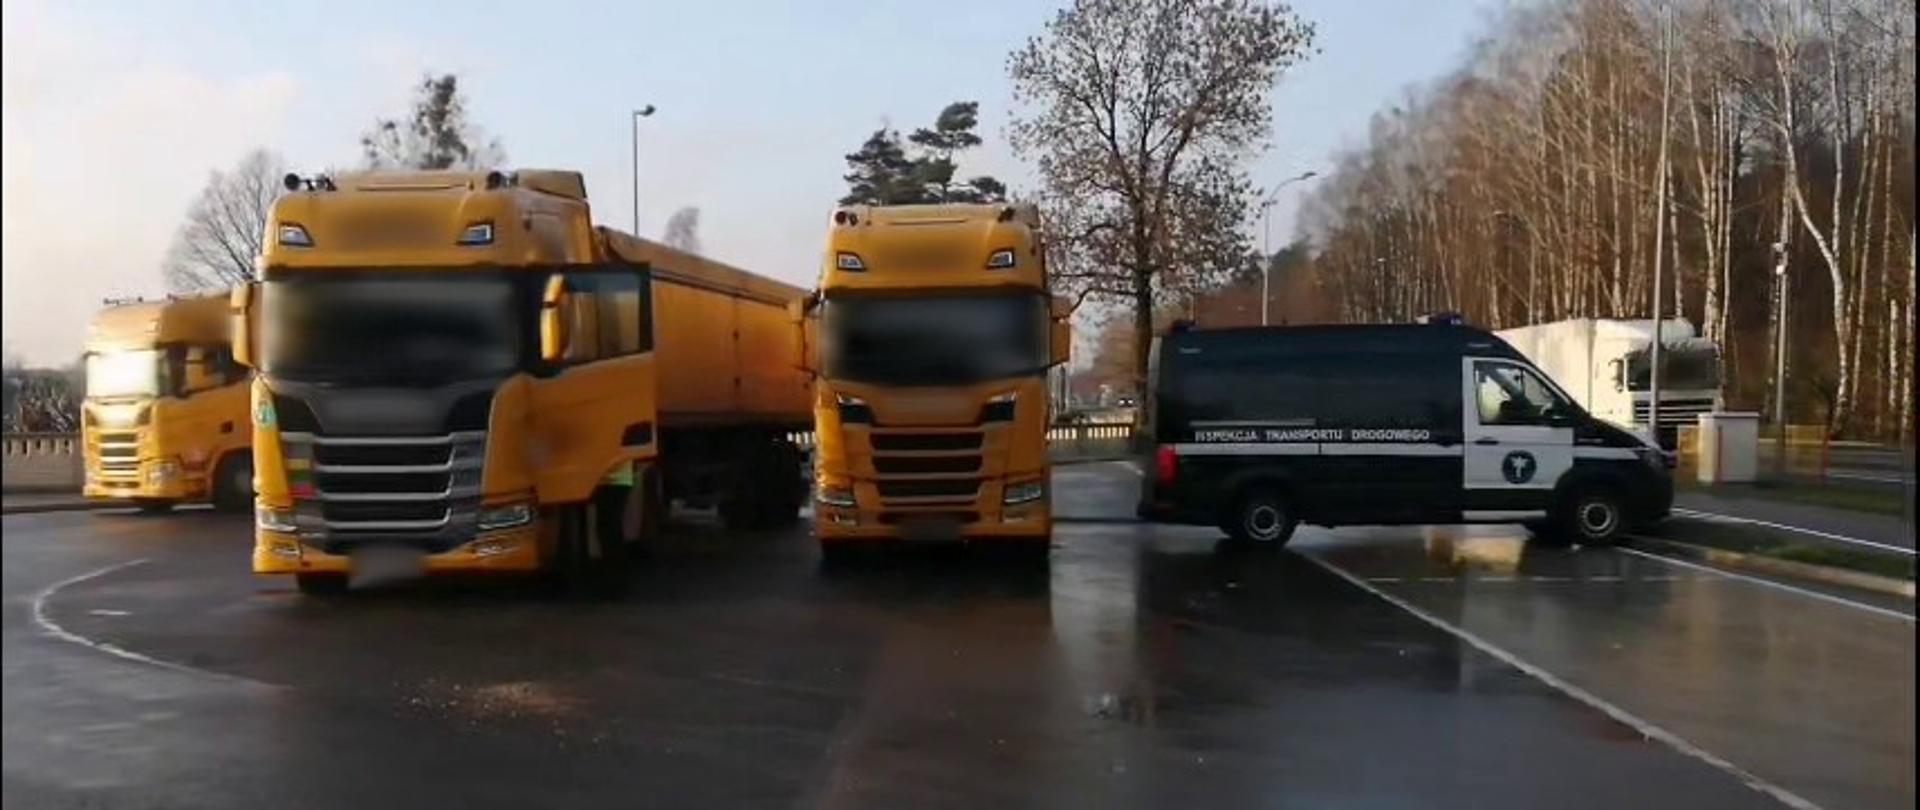 Od lewej: ciągniki siodłowe z podpiętymi naczepami typu wywrotka i oznakowany furgon podlaskiej Inspekcji Transportu Drogowego stoją w punkcie kontrolnym przy krajowej „dziewiętnastce” w Białymstoku.